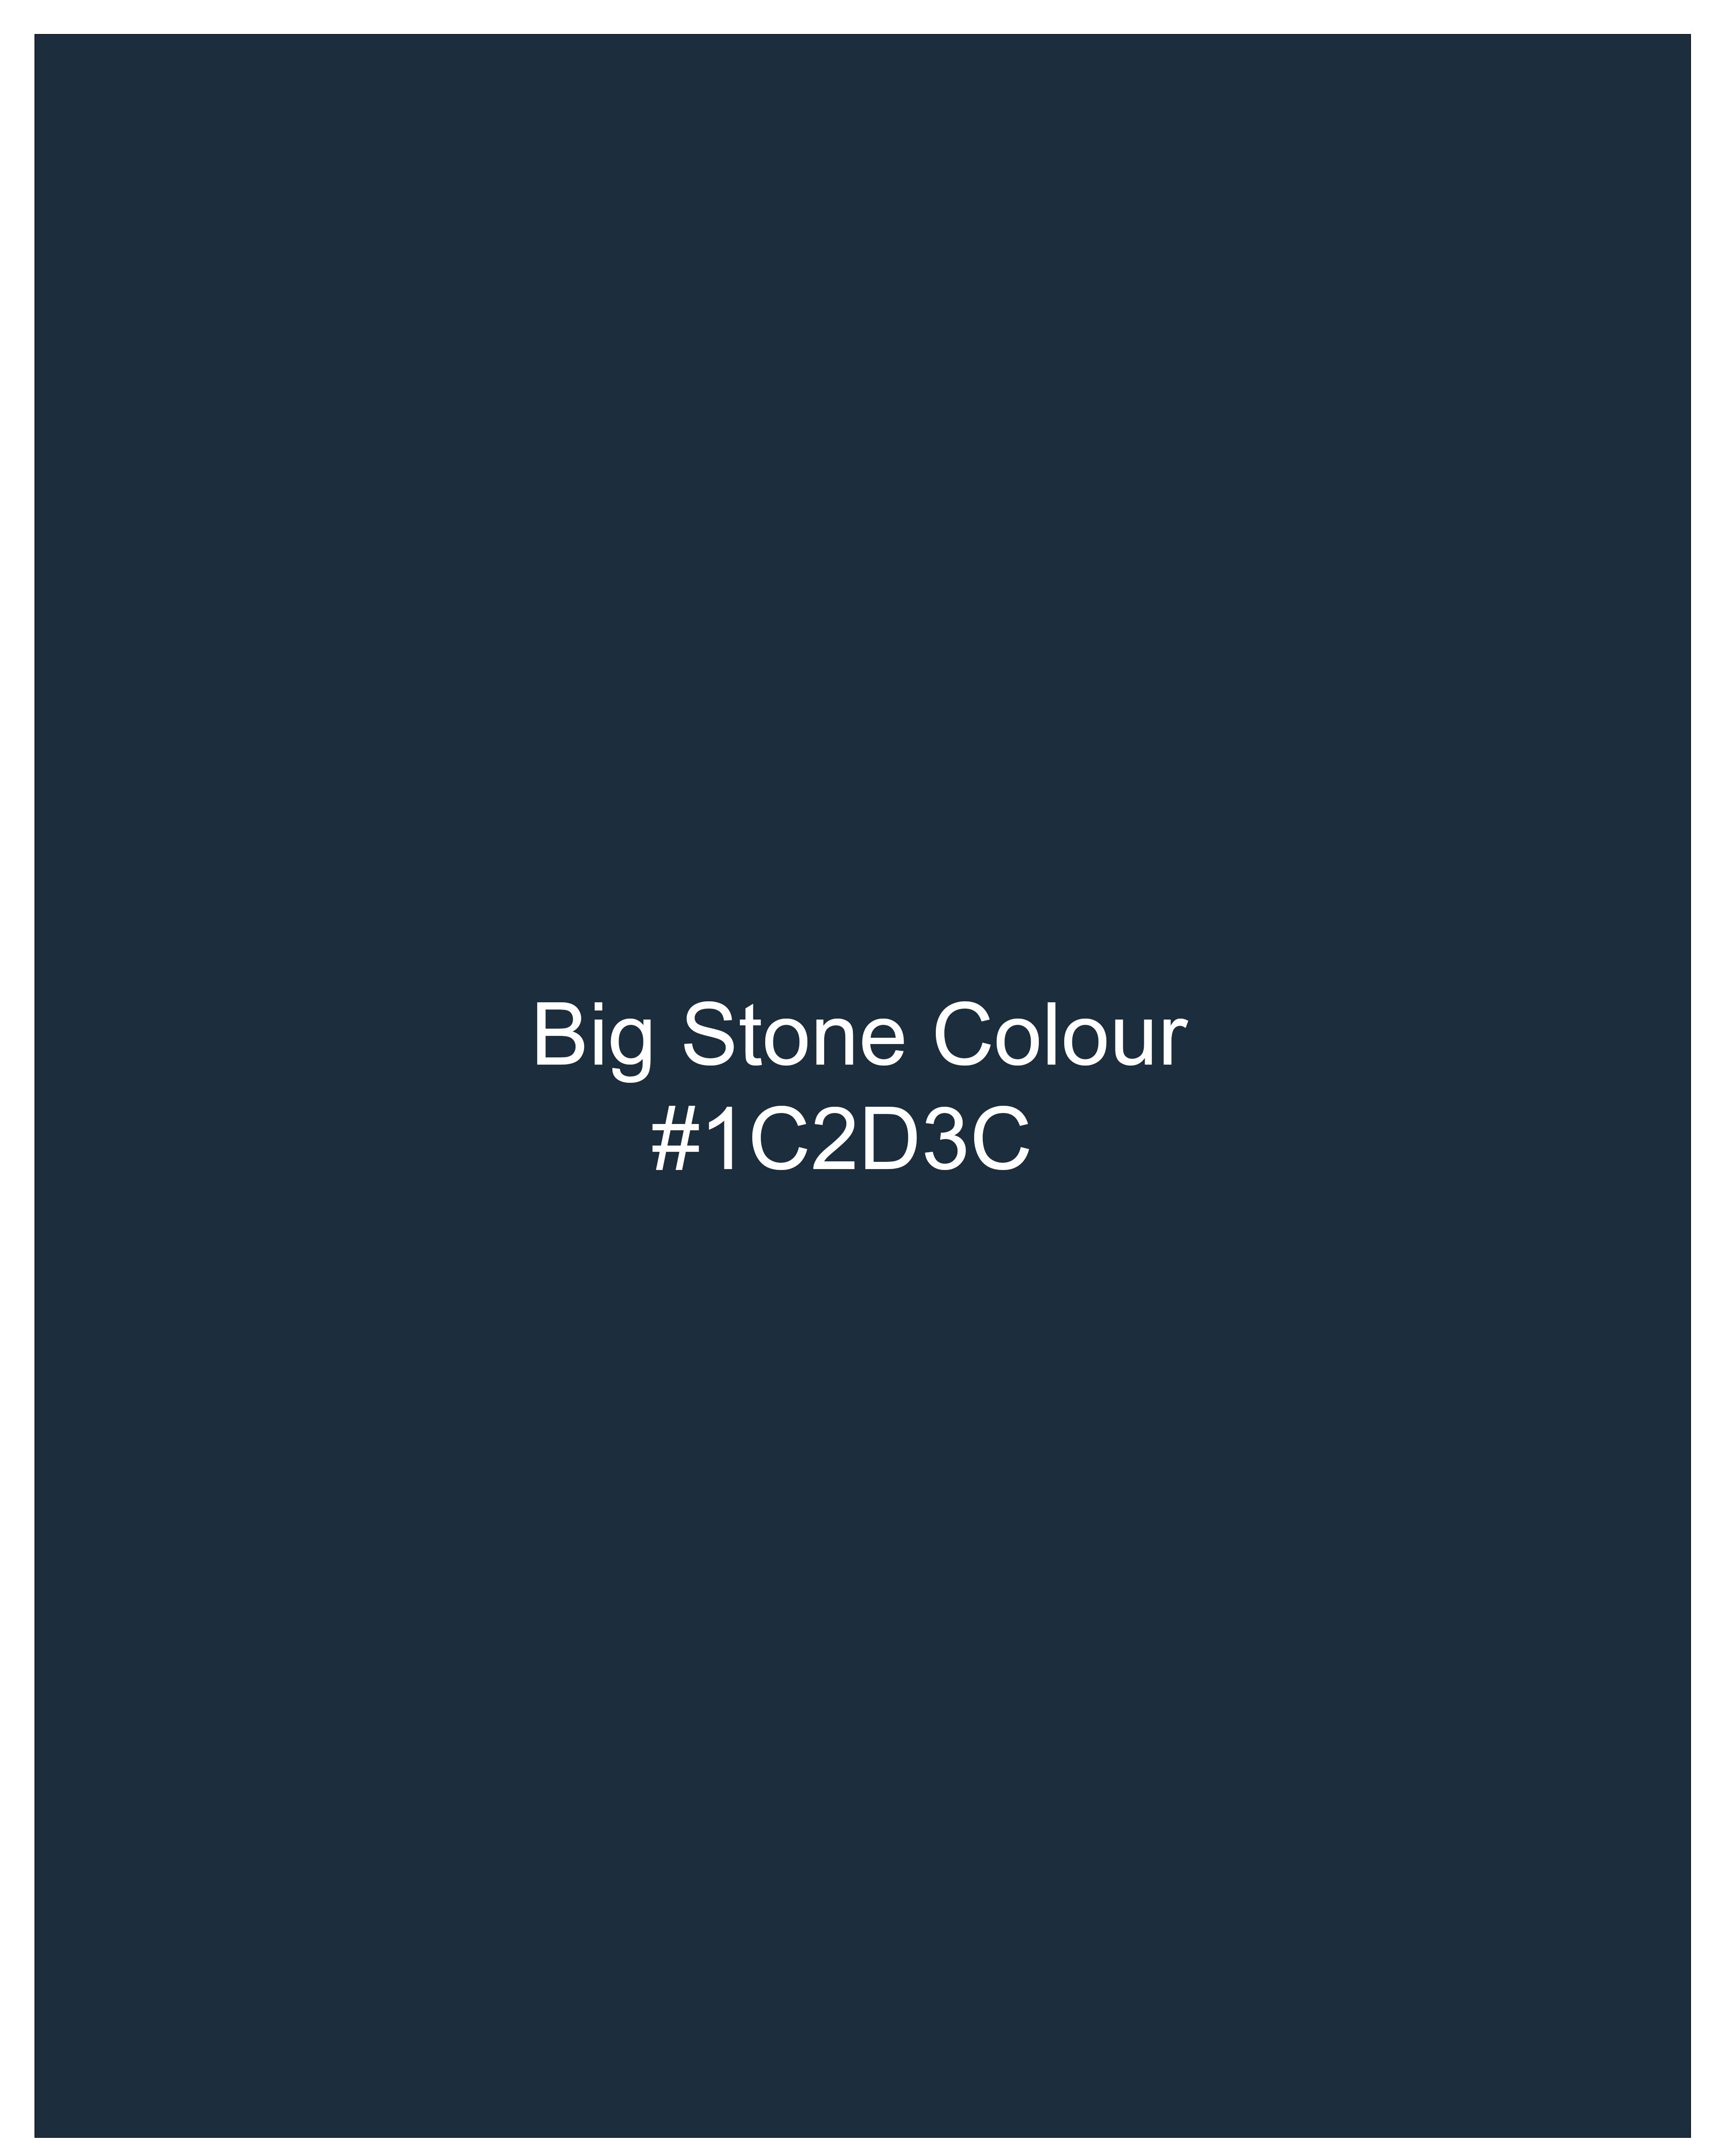 Big Stone Blue Premium Cotton Designer Tuxedo Blazer with Shawl BL2351-BKL-D241-36, BL2351-BKL-D241-38, BL2351-BKL-D241-40, BL2351-BKL-D241-42, BL2351-BKL-D241-44, BL2351-BKL-D241-46, BL2351-BKL-D241-48, BL2351-BKL-D241-50, BL2351-BKL-D241-52, BL2351-BKL-D241-54, BL2351-BKL-D241-56, BL2351-BKL-D241-58, BL2351-BKL-D241-60